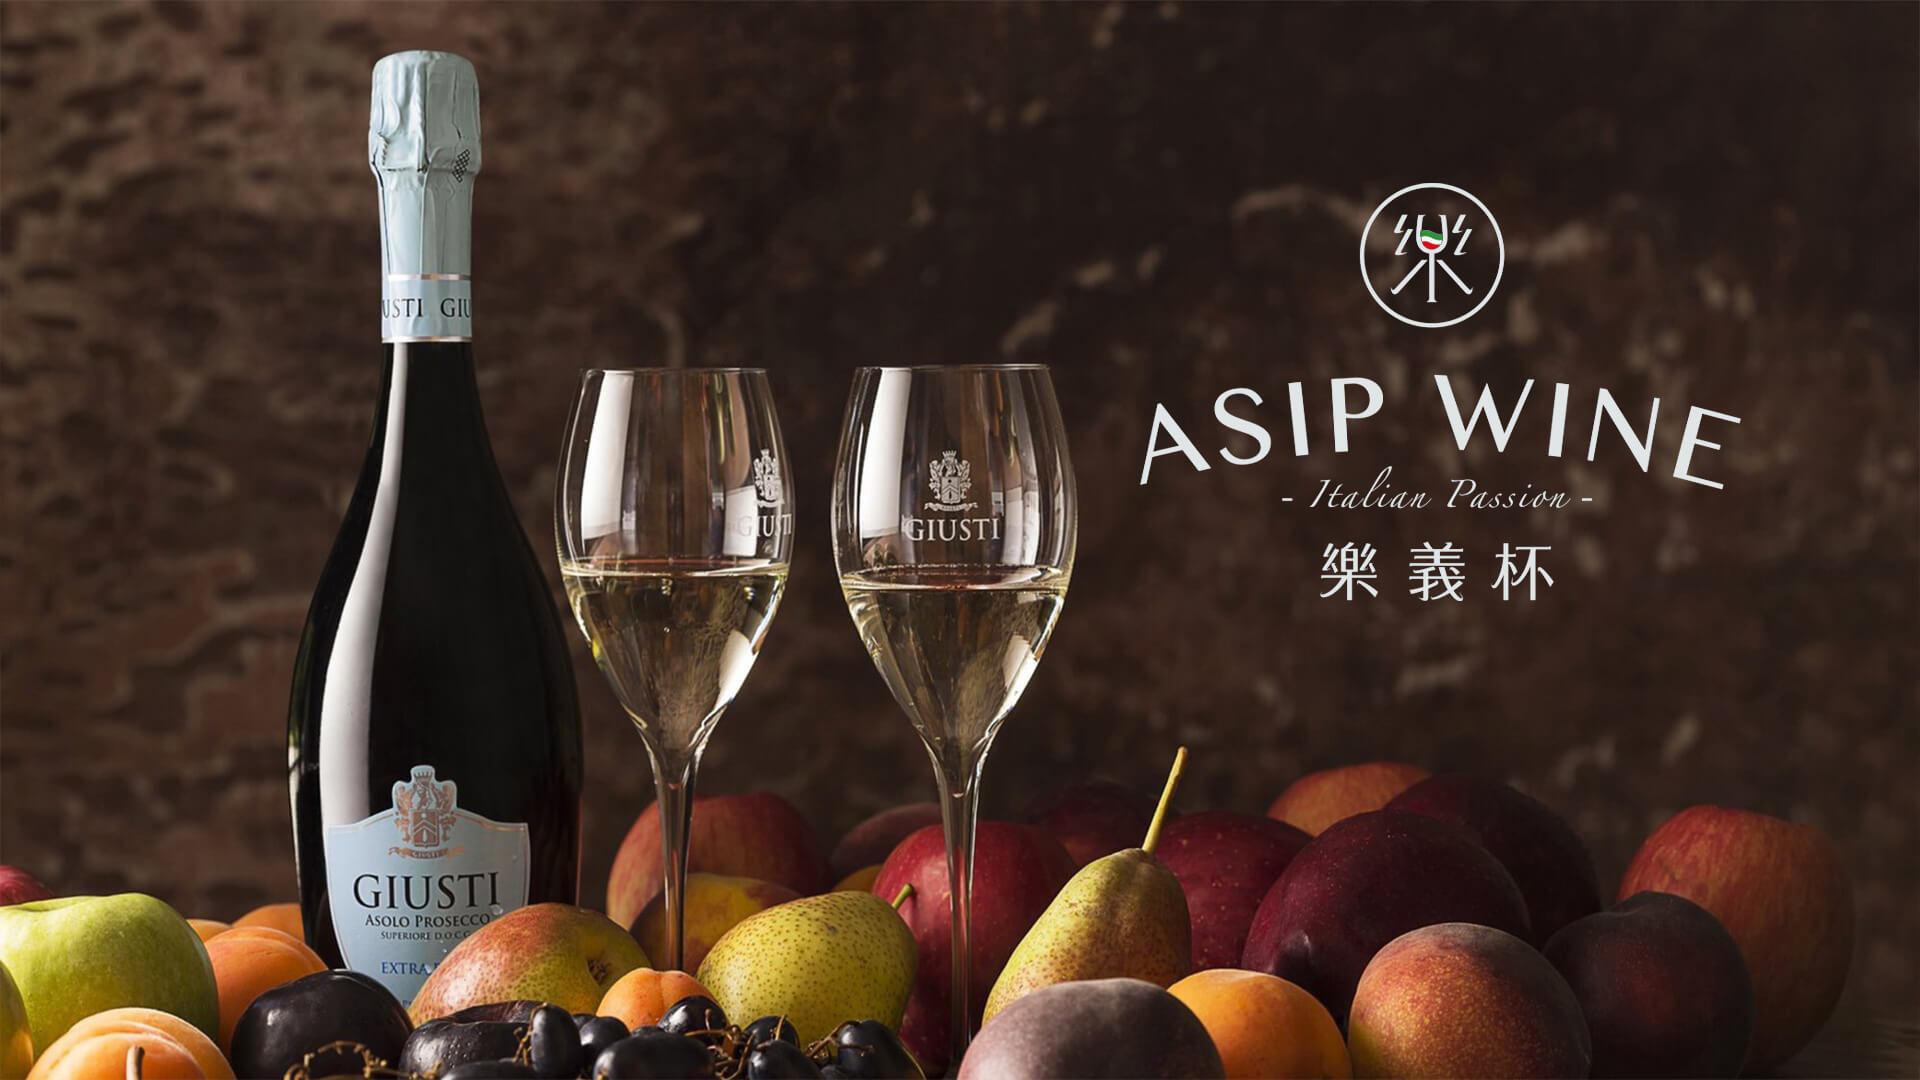 ASIP WINE義大利葡萄酒&紐約家具設計中心